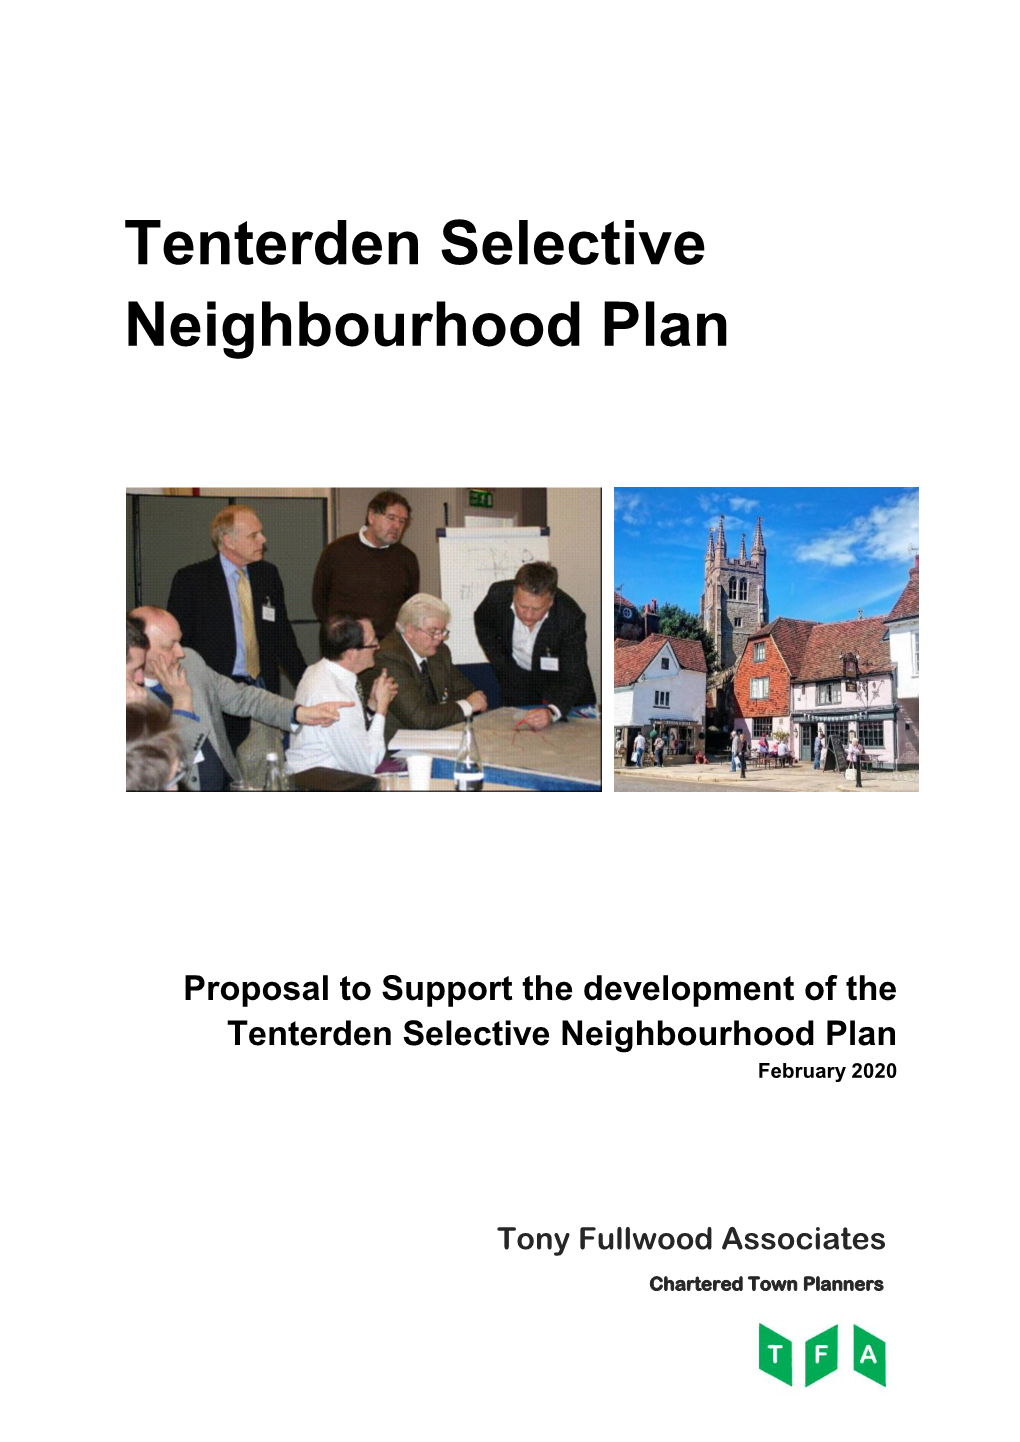 Tenterden Selective Neighbourhood Plan